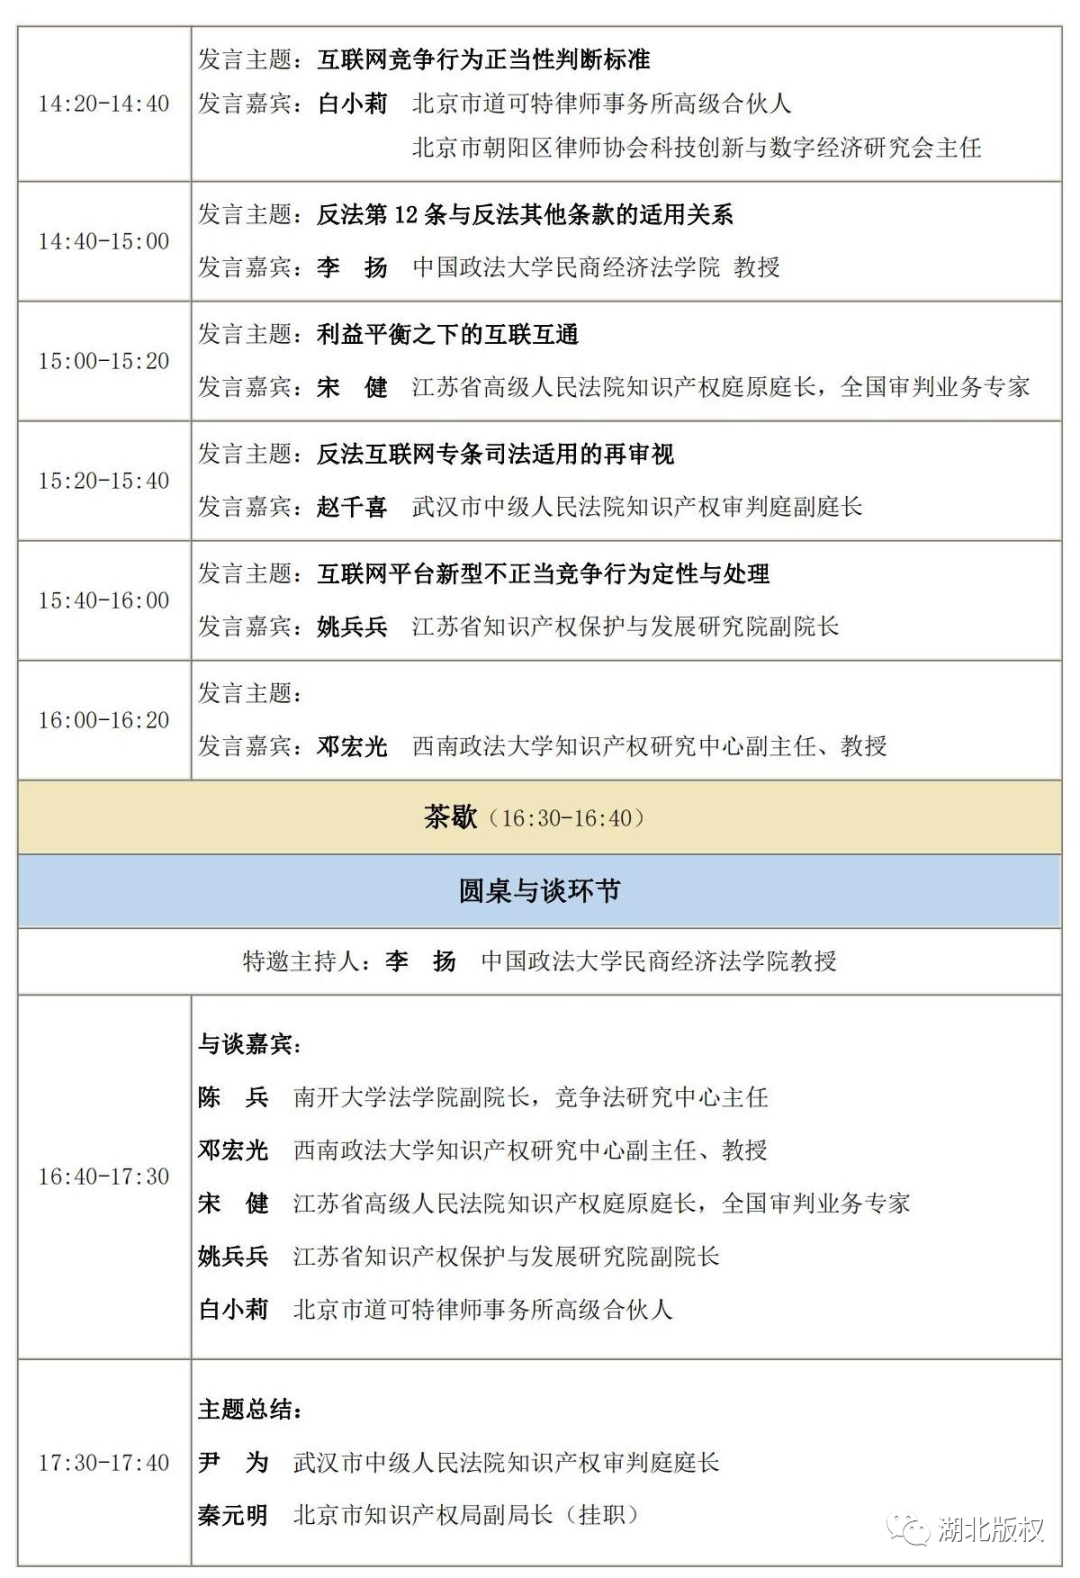 【会议报名】第二届版权产业创新及知产保护东湖论坛（6月16日武汉）